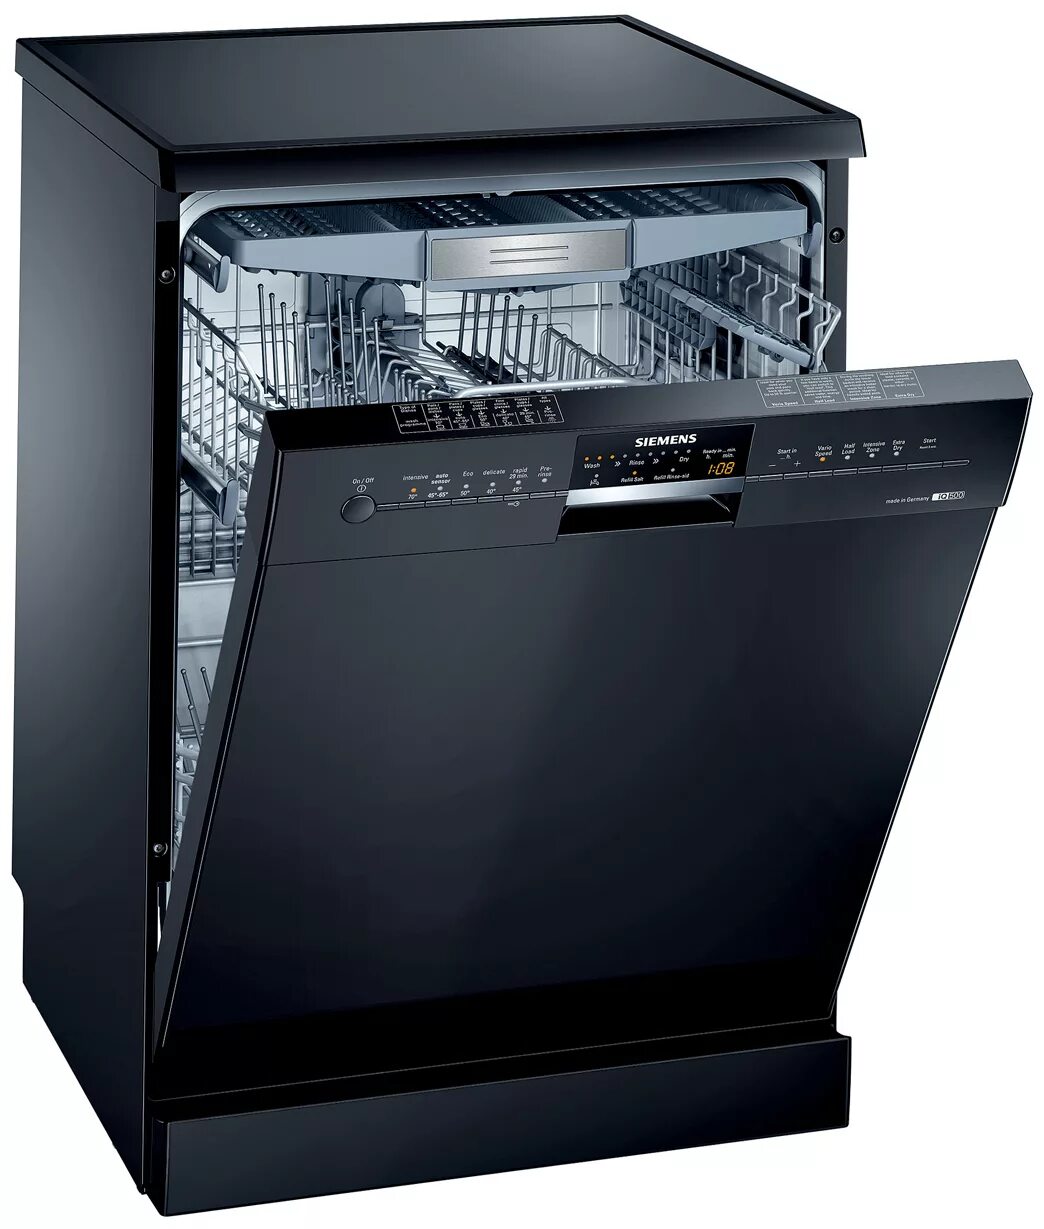 Посудомоечная машина Siemens SN 25m888. Siemens 500 посудомоечная машина. Siemens посудомоечная машина sn44d201sk/34. Посудомойка Борк встраиваемая.